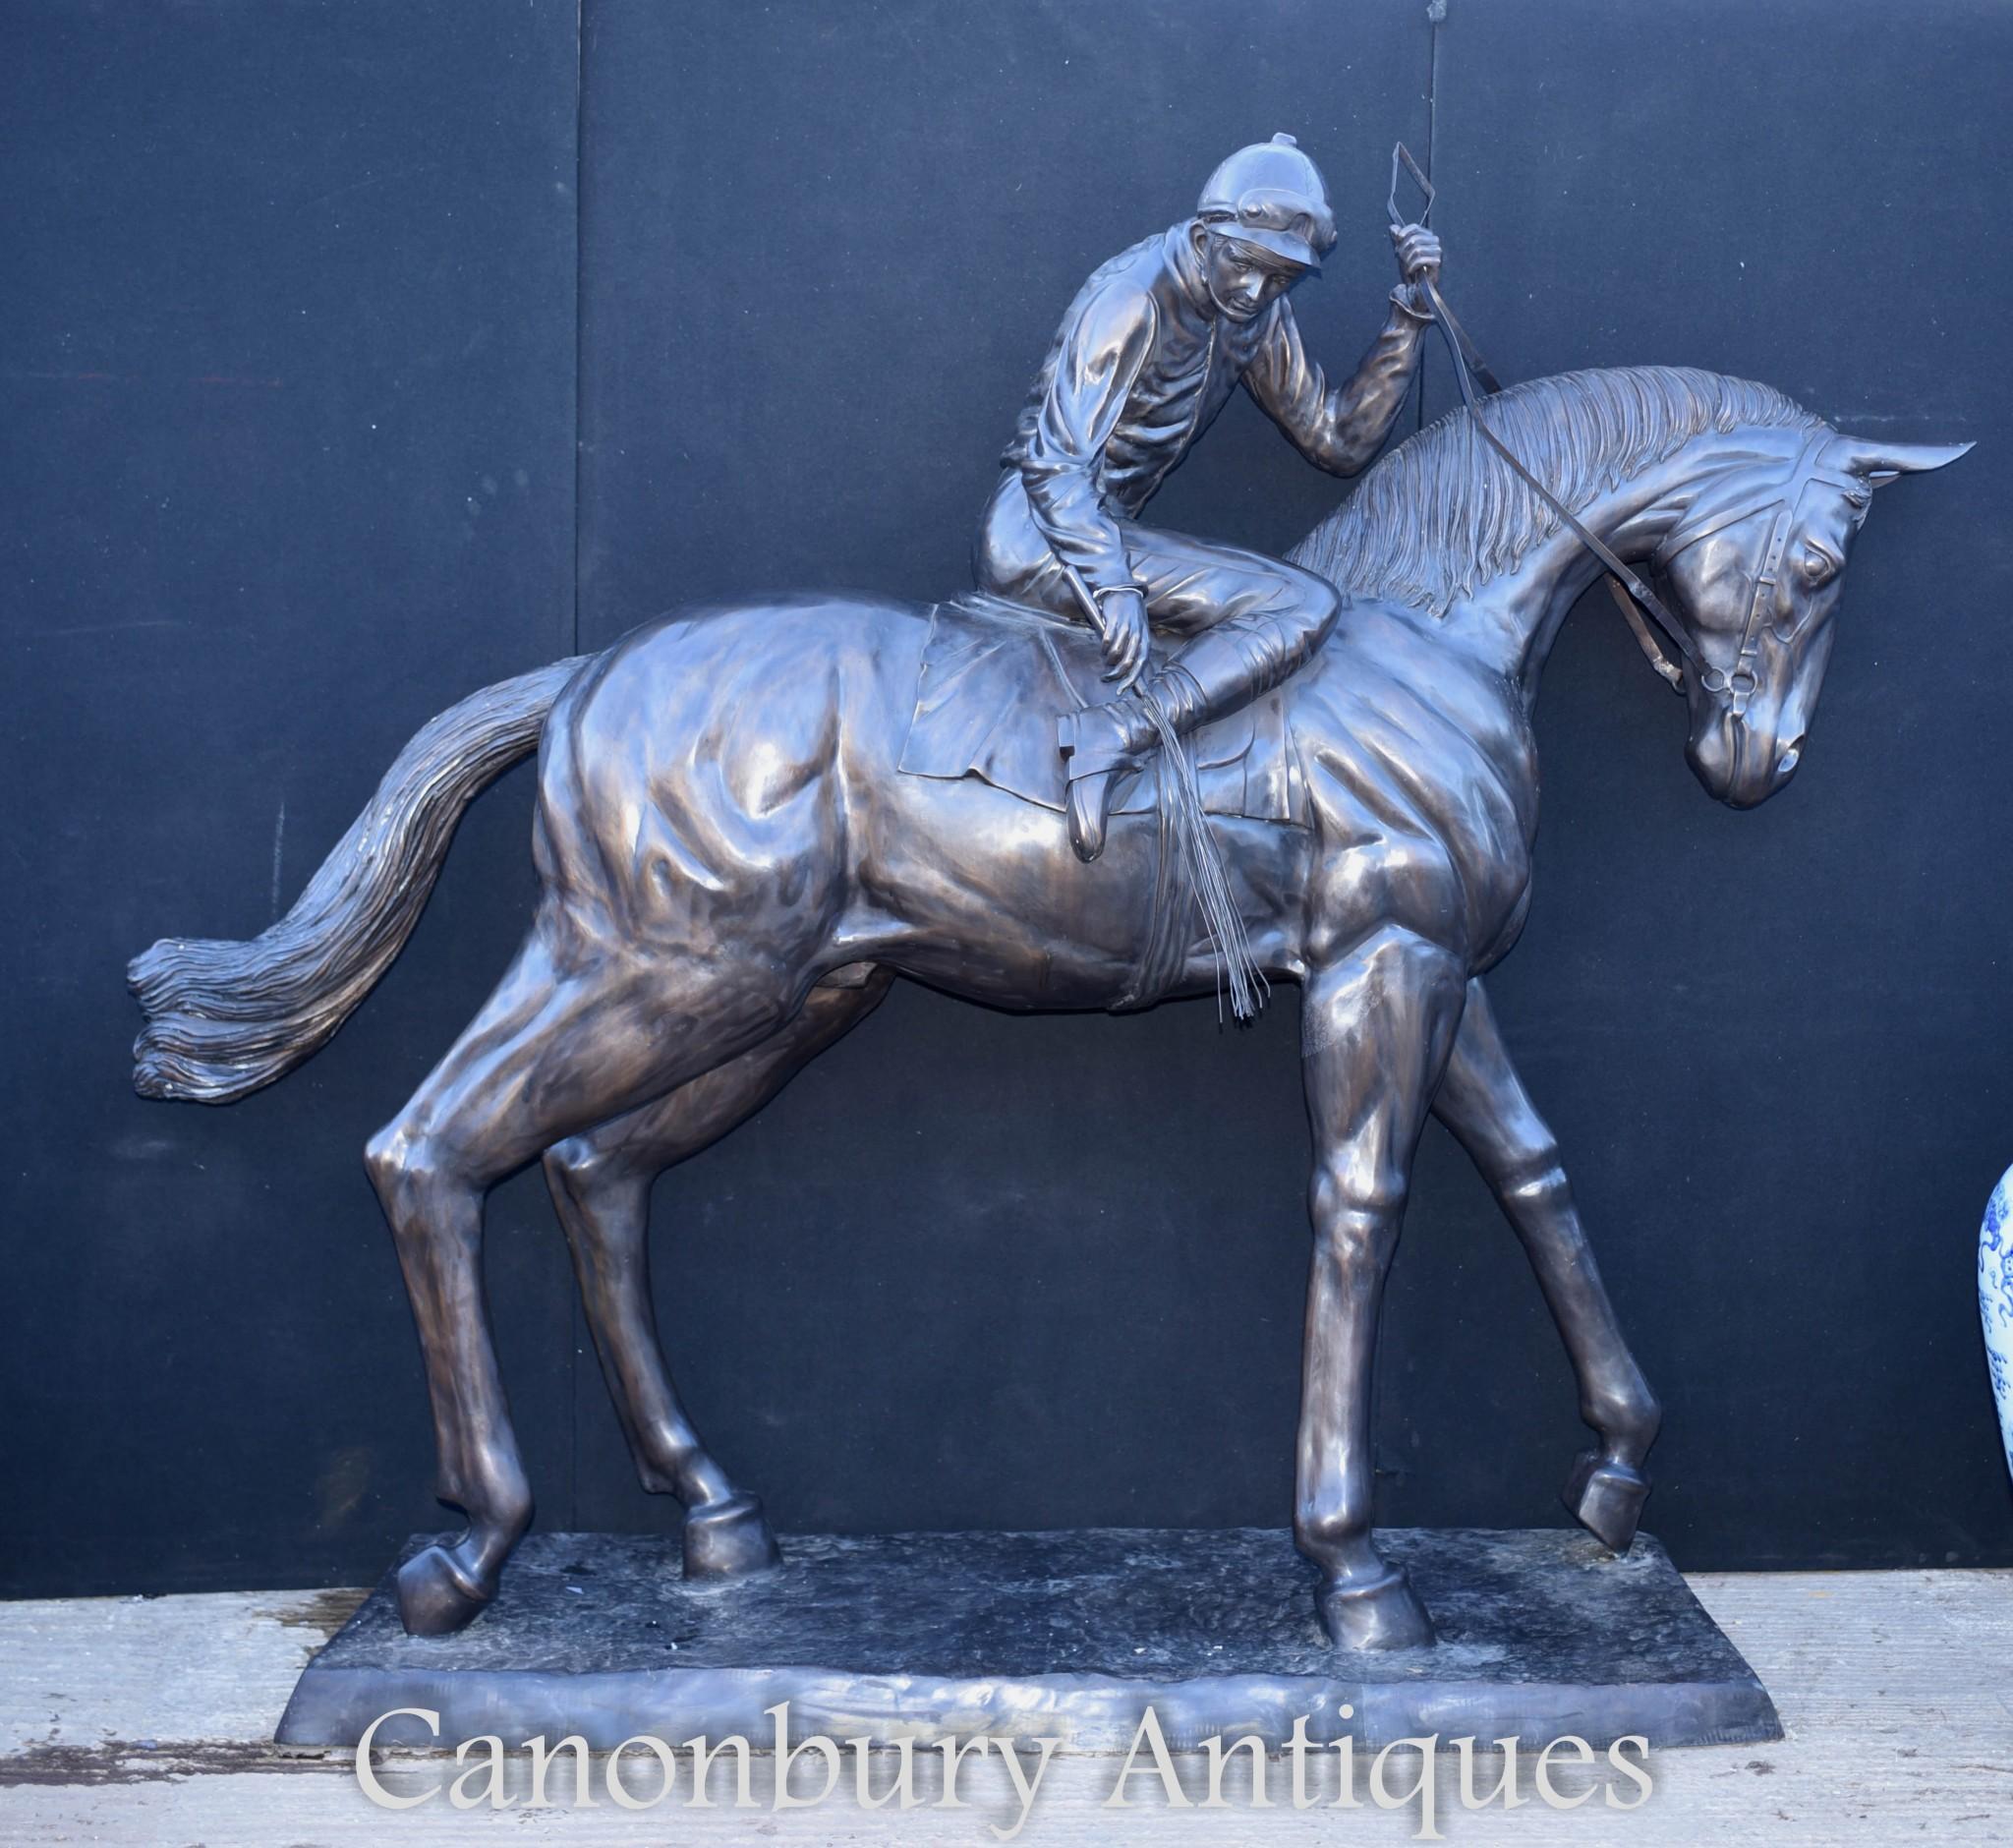 Wunderschöne lebensgroße Bronzestatue von Pferd und Jockey des französischen Künstlers Isidore Bonheur. Dies ist 80 Zoll hoch - 203 CM.

Das Pferd und der Jockey sind vielleicht eines der beliebtesten Motive in der Bronzekunst, und hier haben wir